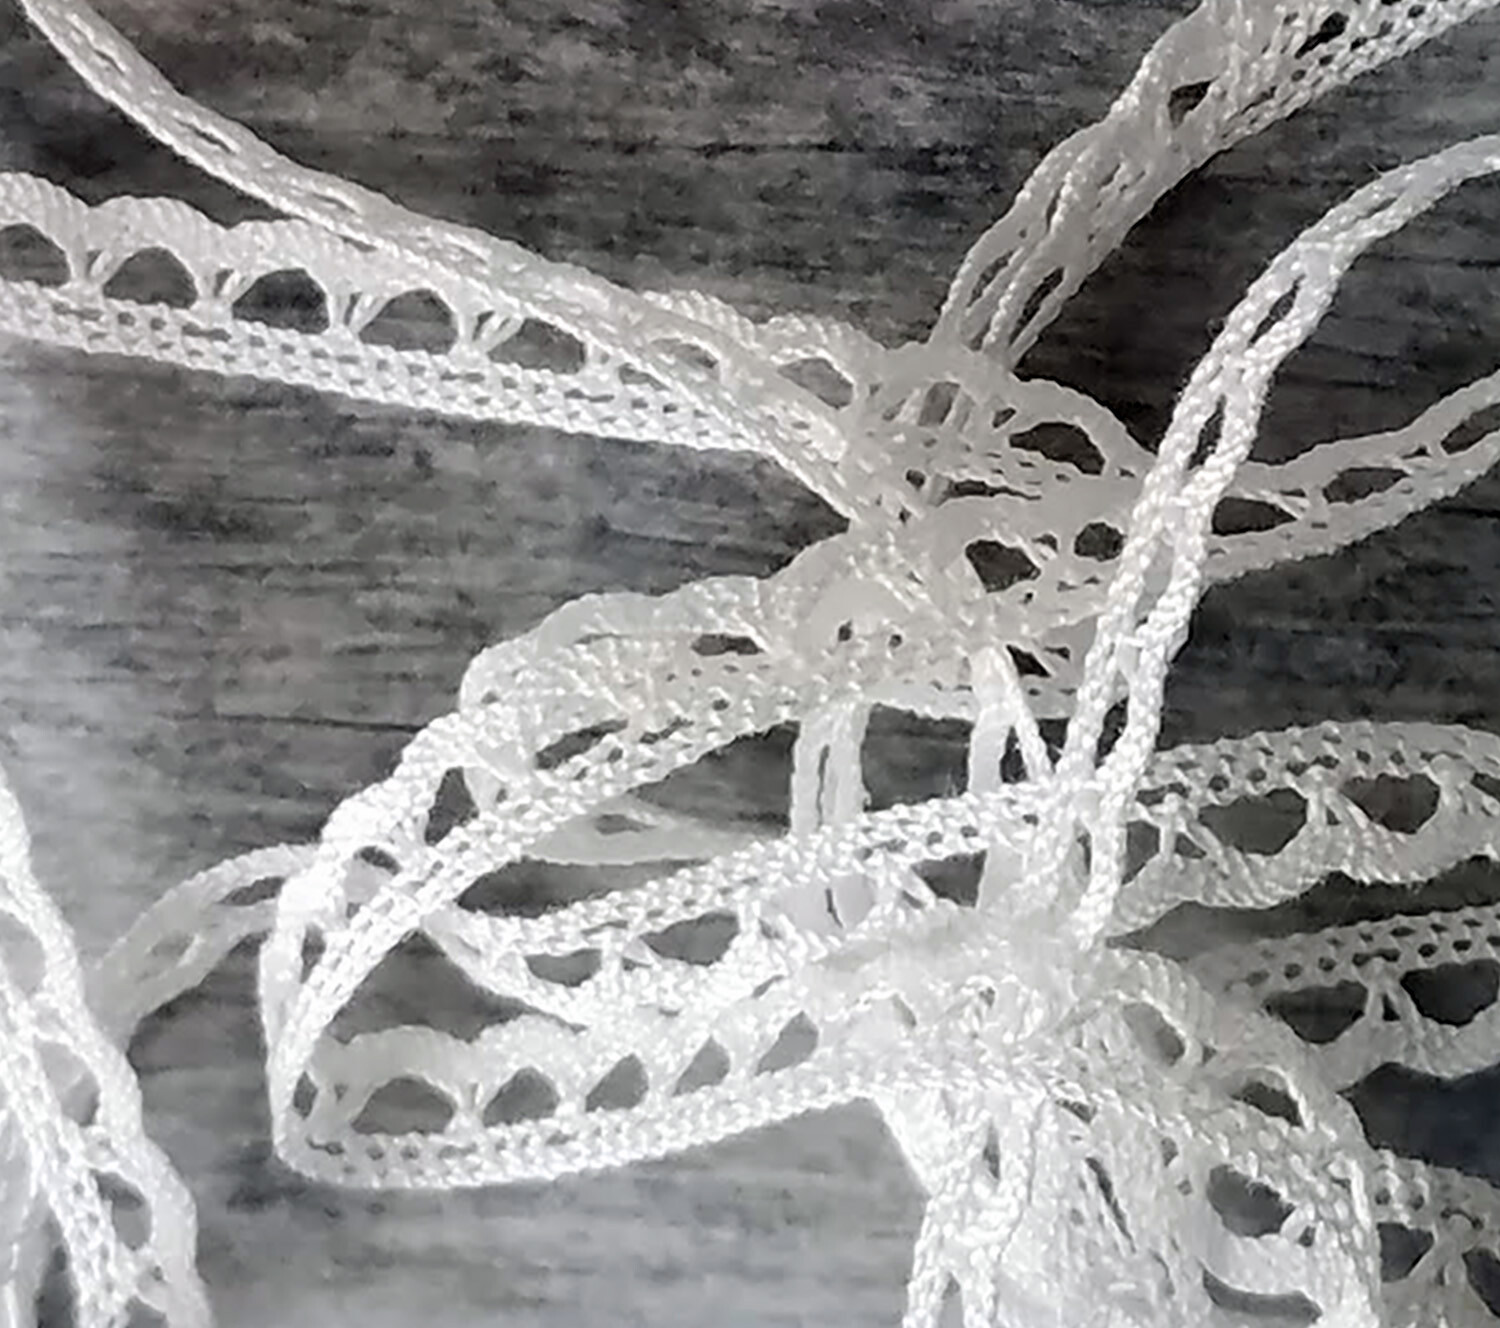 Ecru Cotton Crochet Lace Natural 75 mm/3  – The Lace Co.